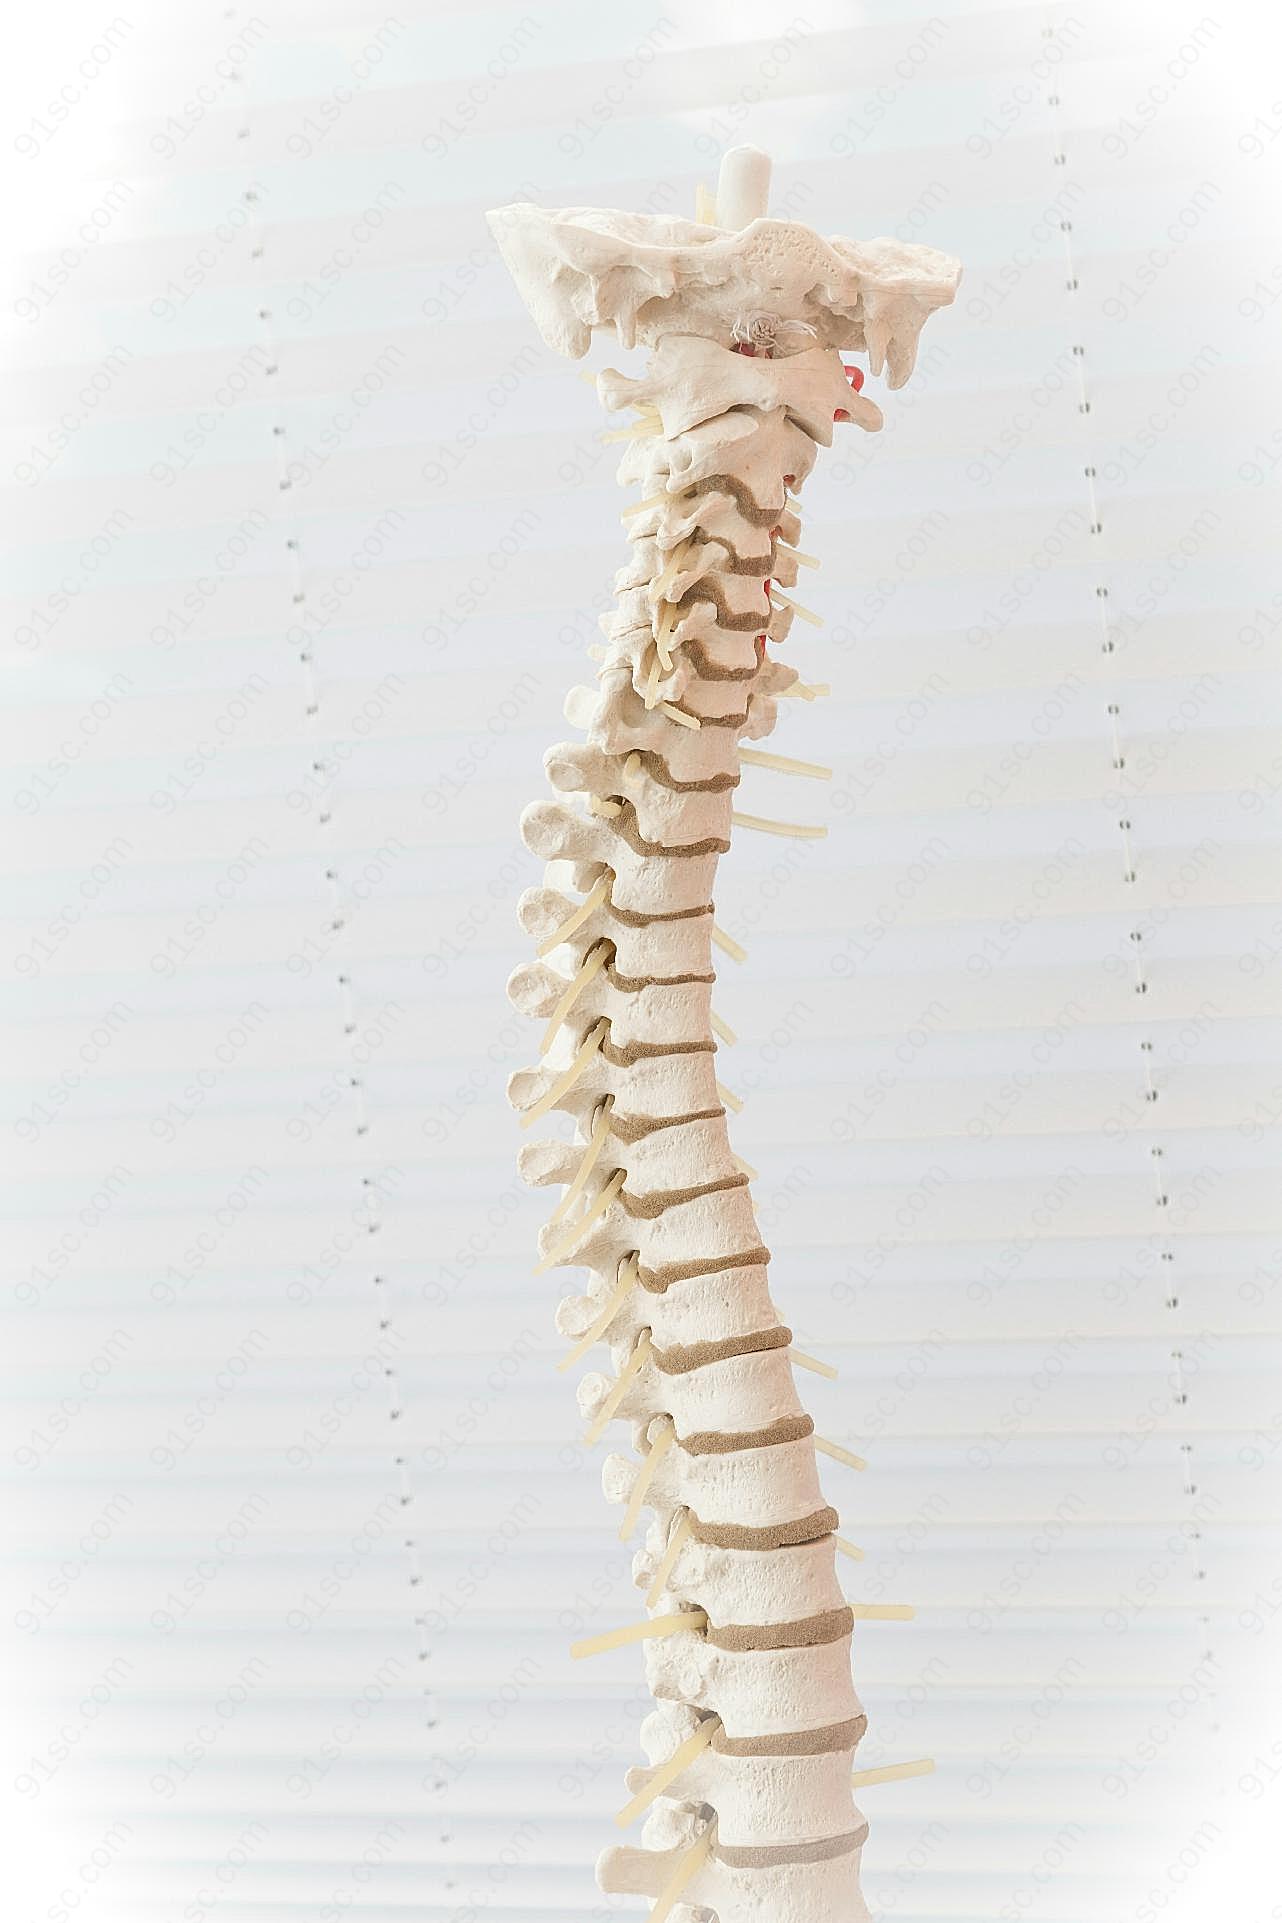 脊柱正常生理弯曲图片摄影高清